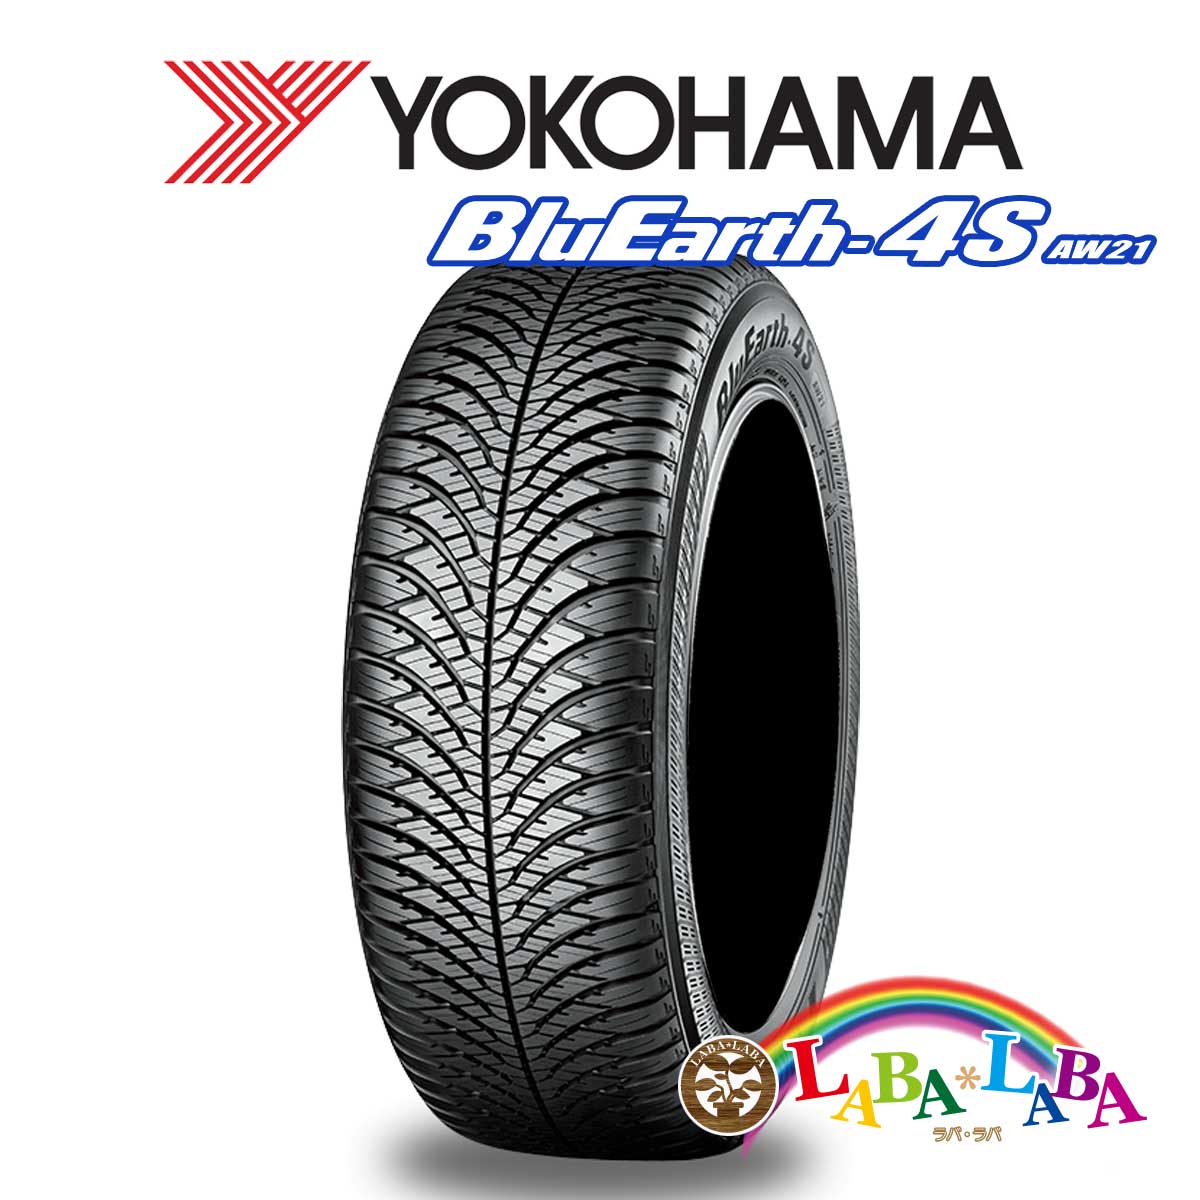 ２本以上送料無料 国産タイヤ オールシーズン 商店 新品 タイヤのみ YOKOHAMA ヨコハマ 175 AW21 ブルーアース BluEarth-4S 人気の定番 82T 65R14